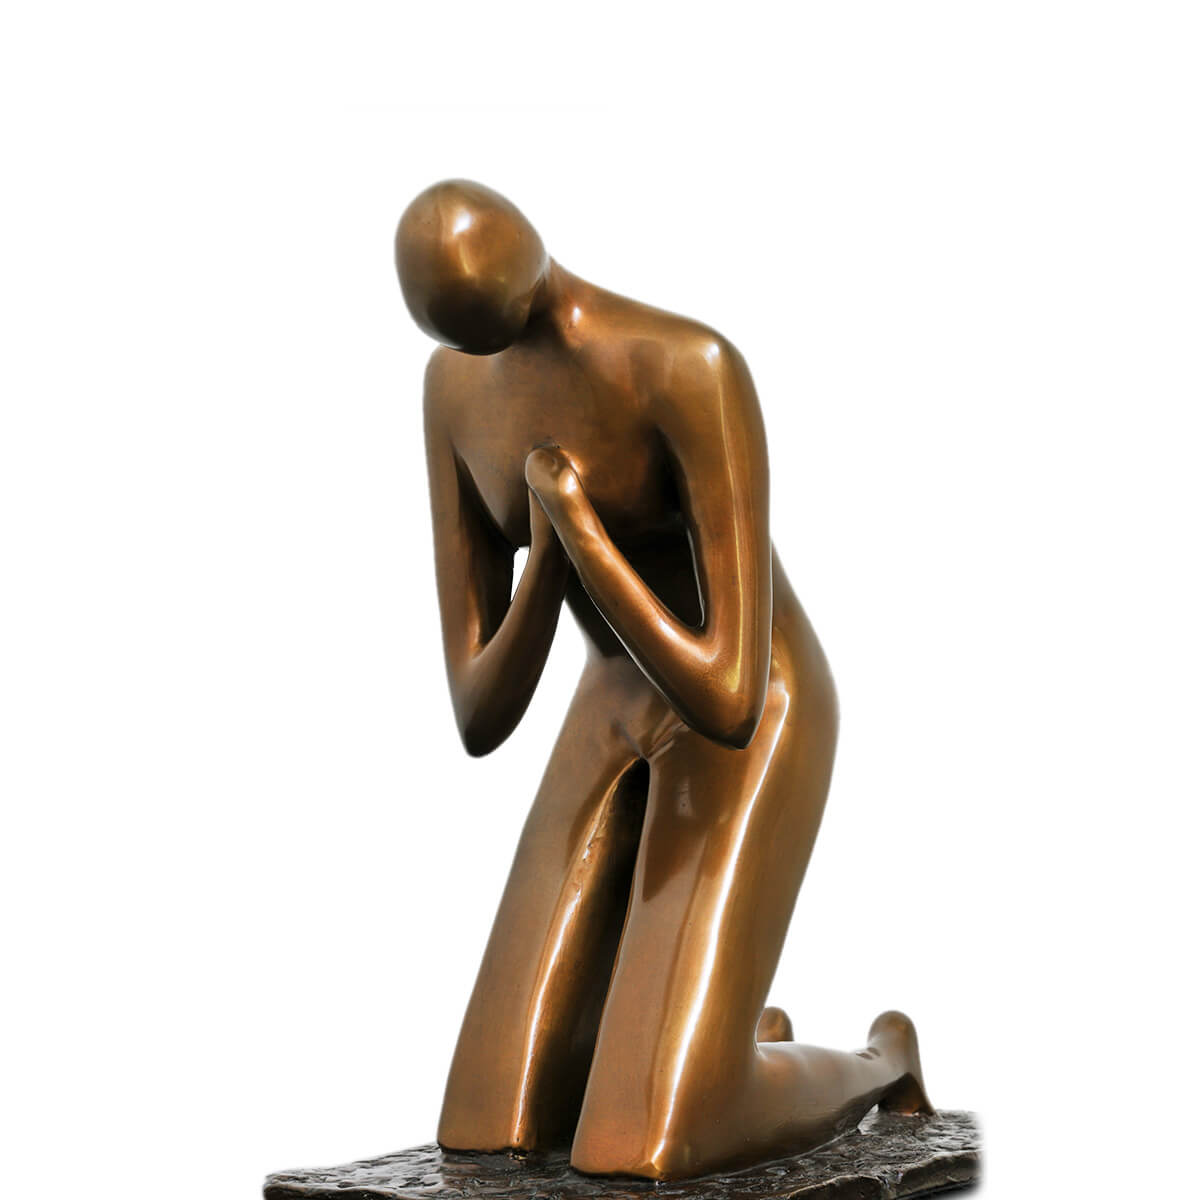 Robert-Helle-Sculpture-Gallery-Prayer-2-1200x1200